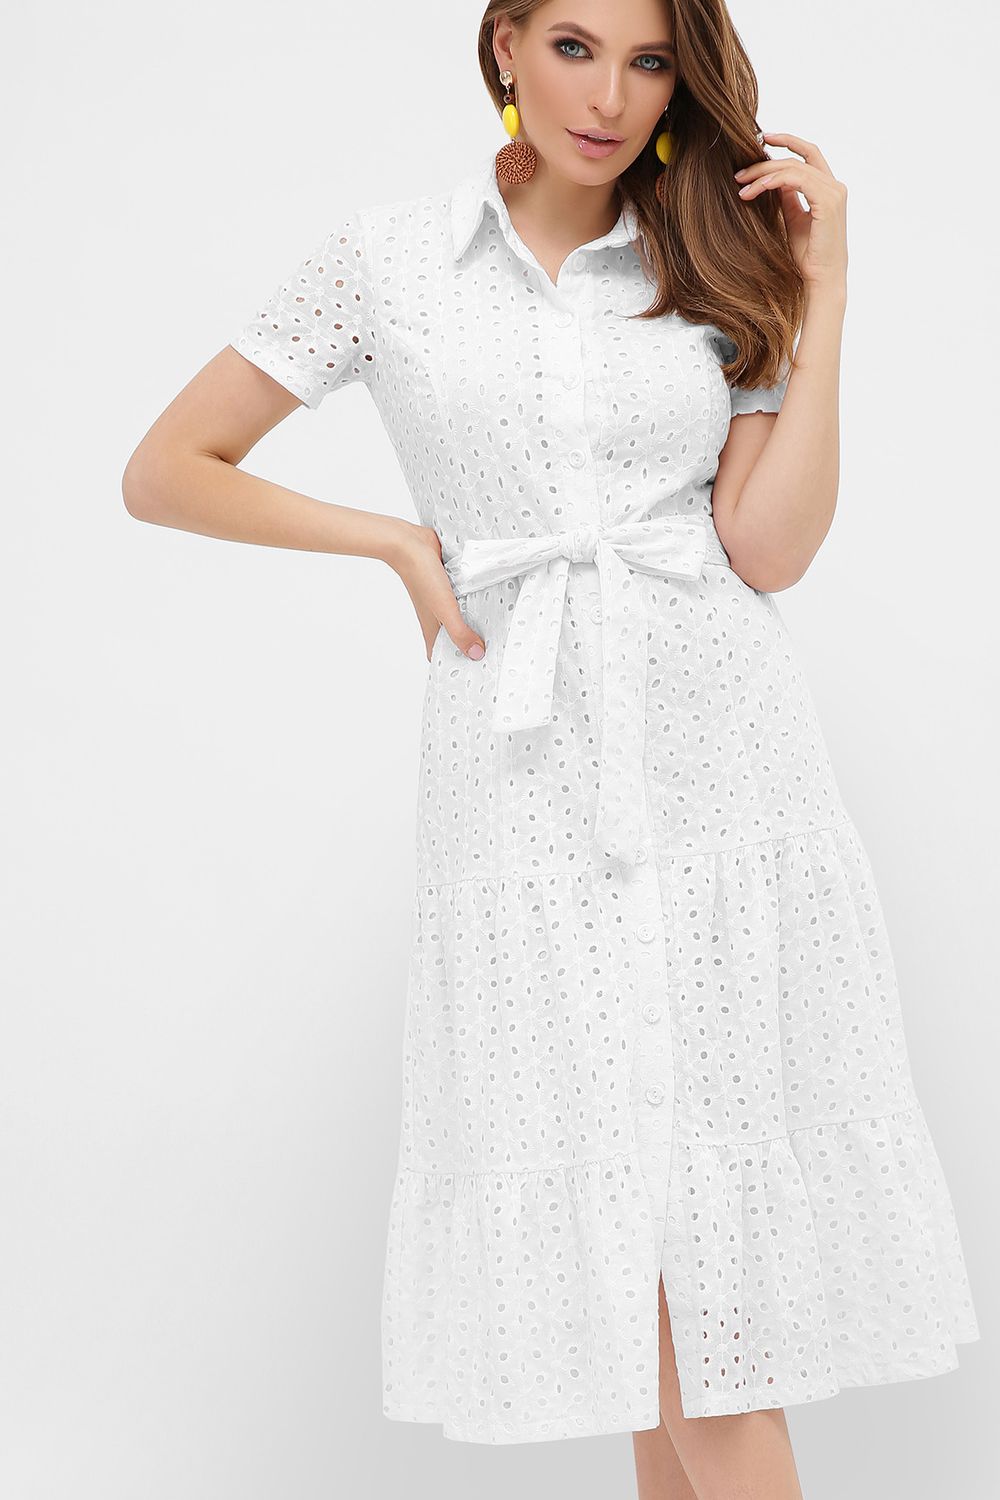 Модное летнее платье рубашка из прошвы белое - фото